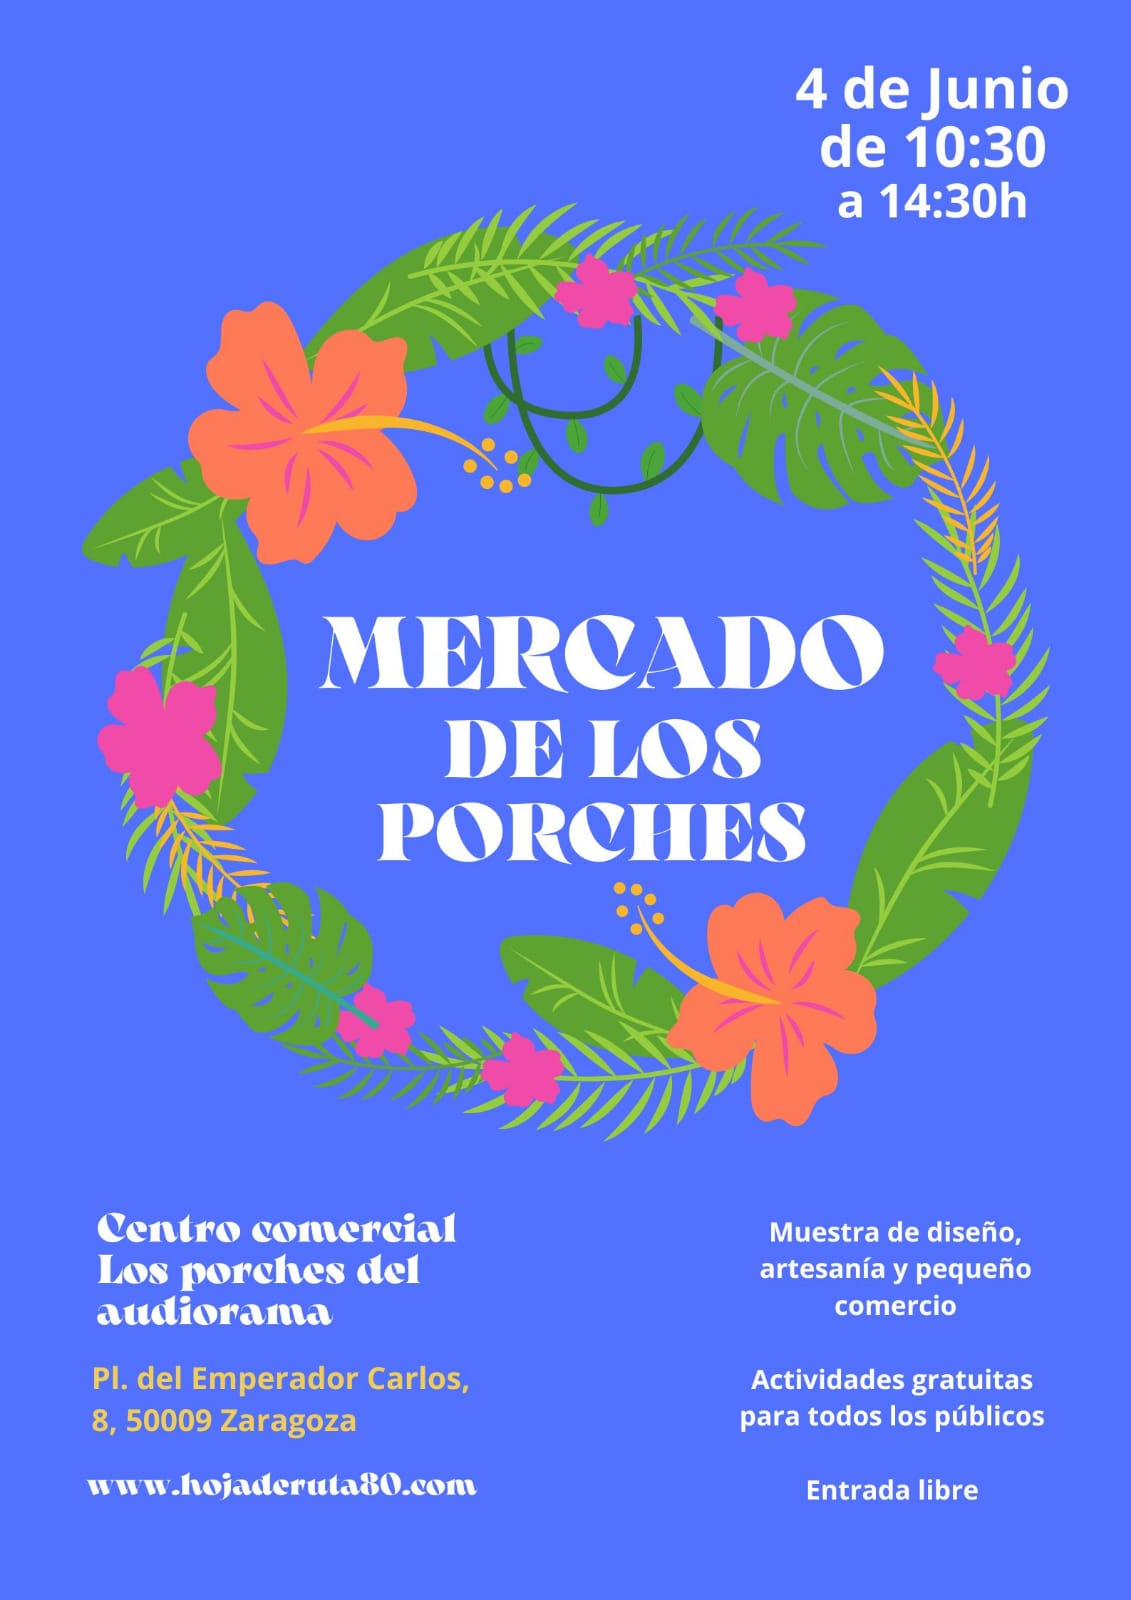 El Mercado de los Porches celebra su última edición antes del verano: una jornada con la creatividad y la sostenibilidad como protagonistas